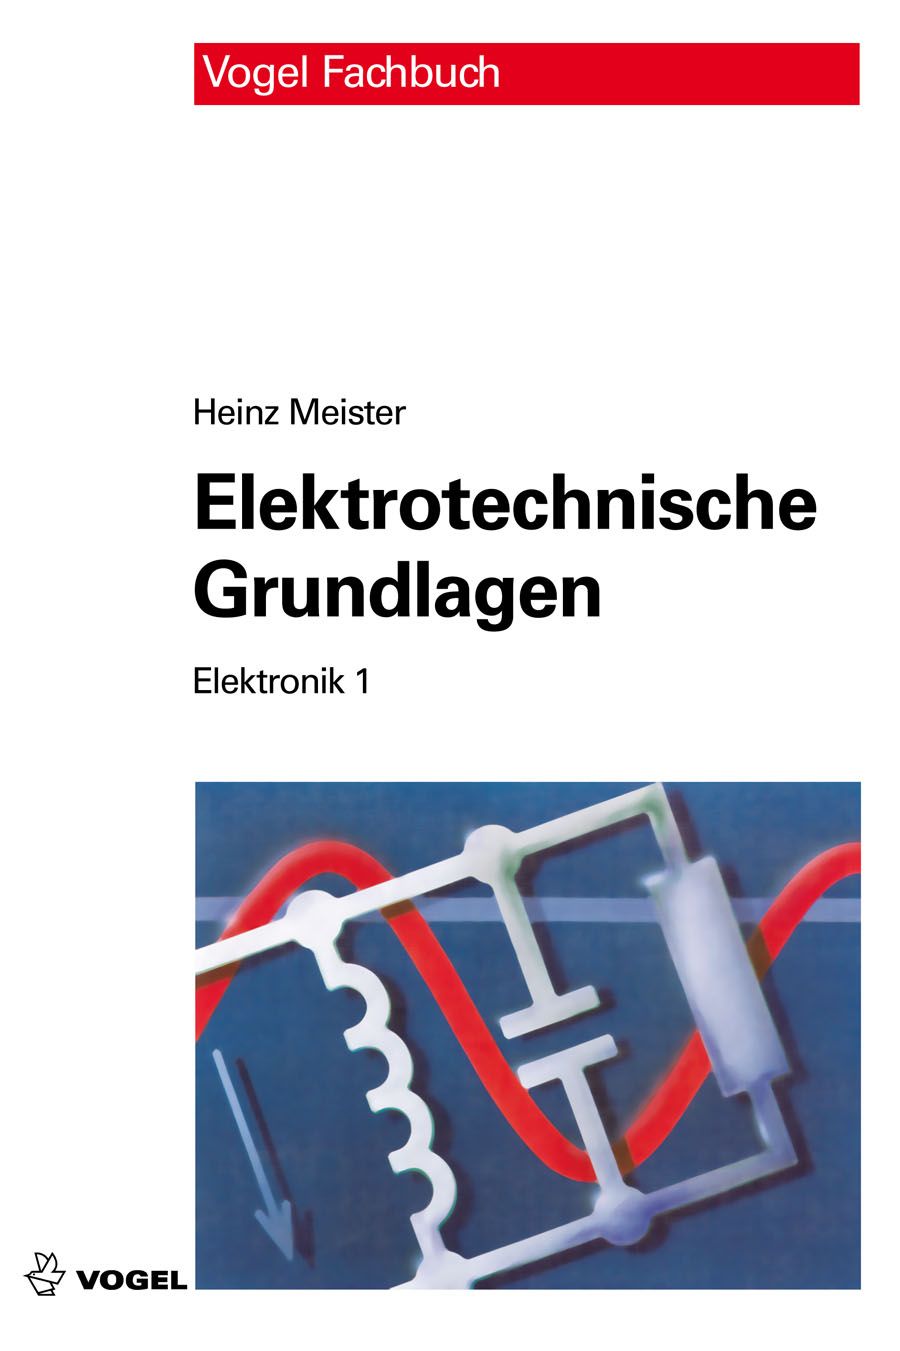 Das Fachbuch "Elektronik 1: Elektrotechnische Grundlagen" von Heinz Meister